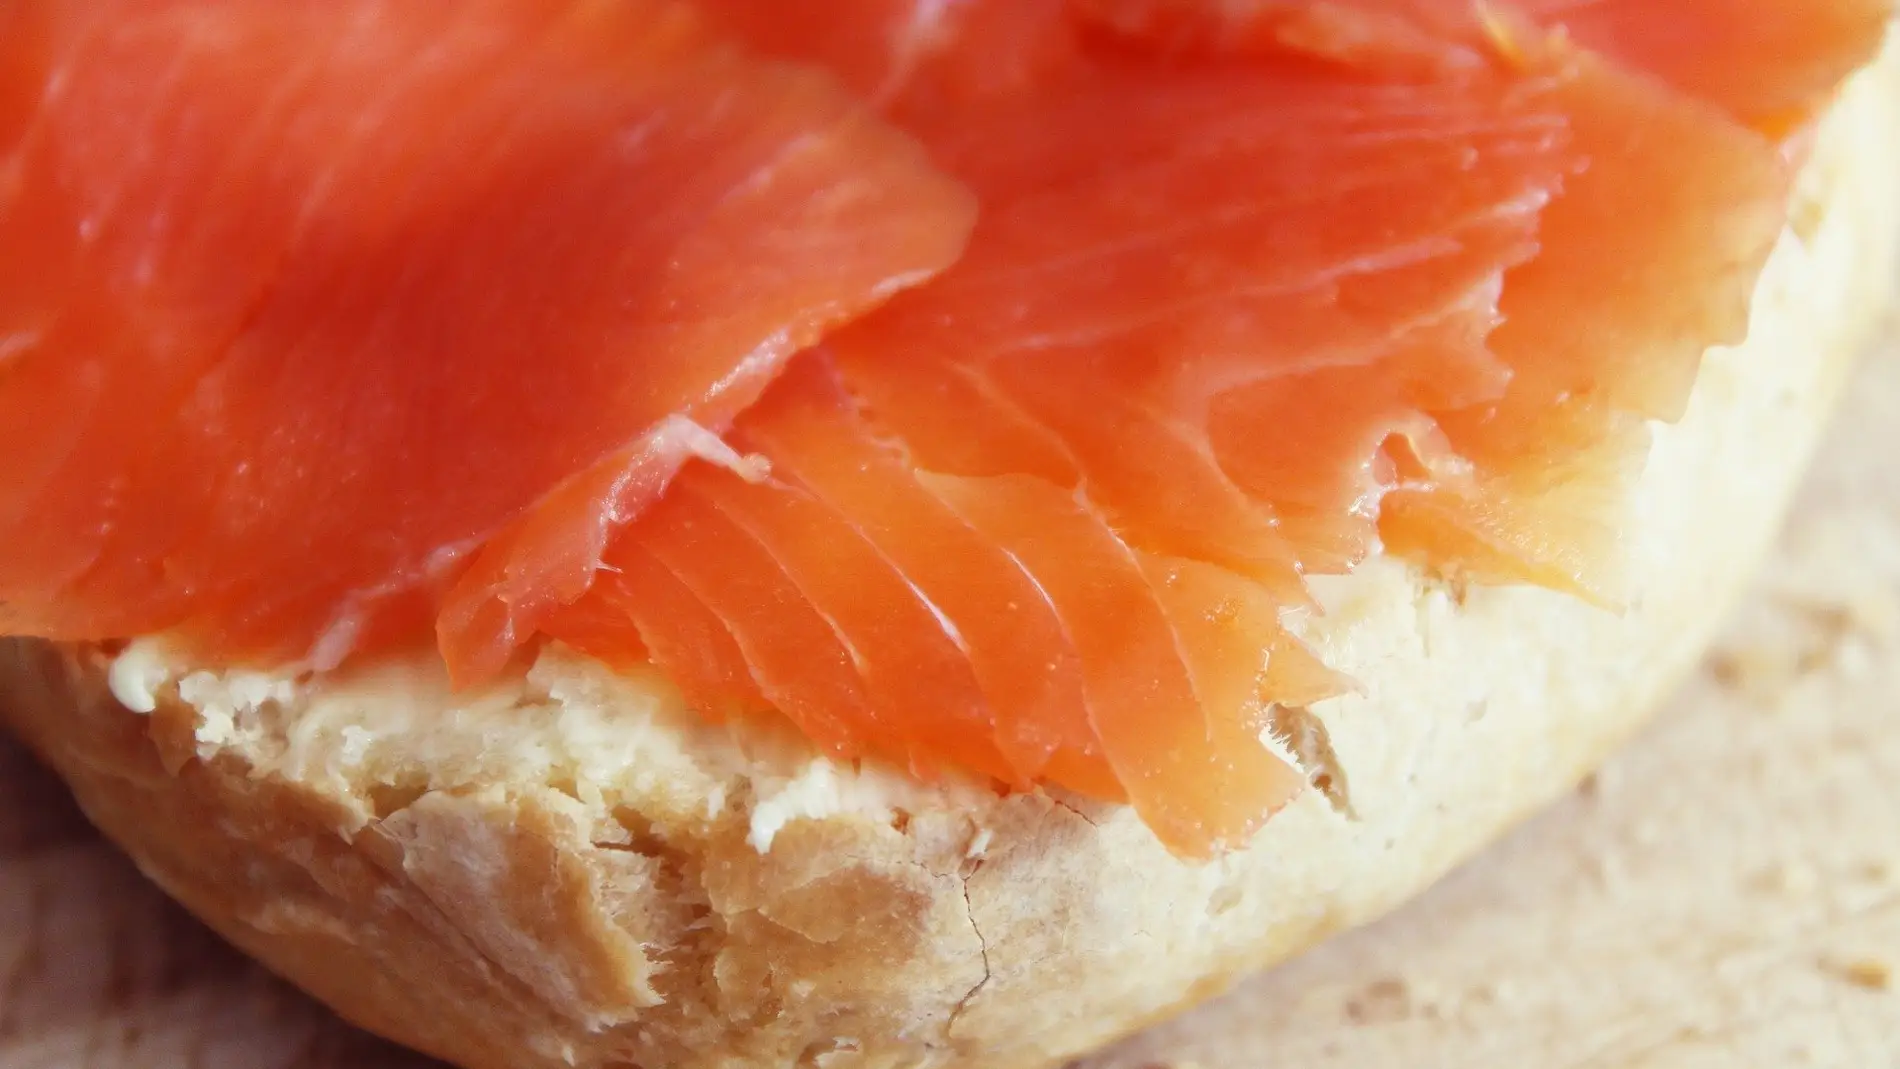 Alerta alimentaria tras detectar listeria en un lote de salmón ahumado marinado